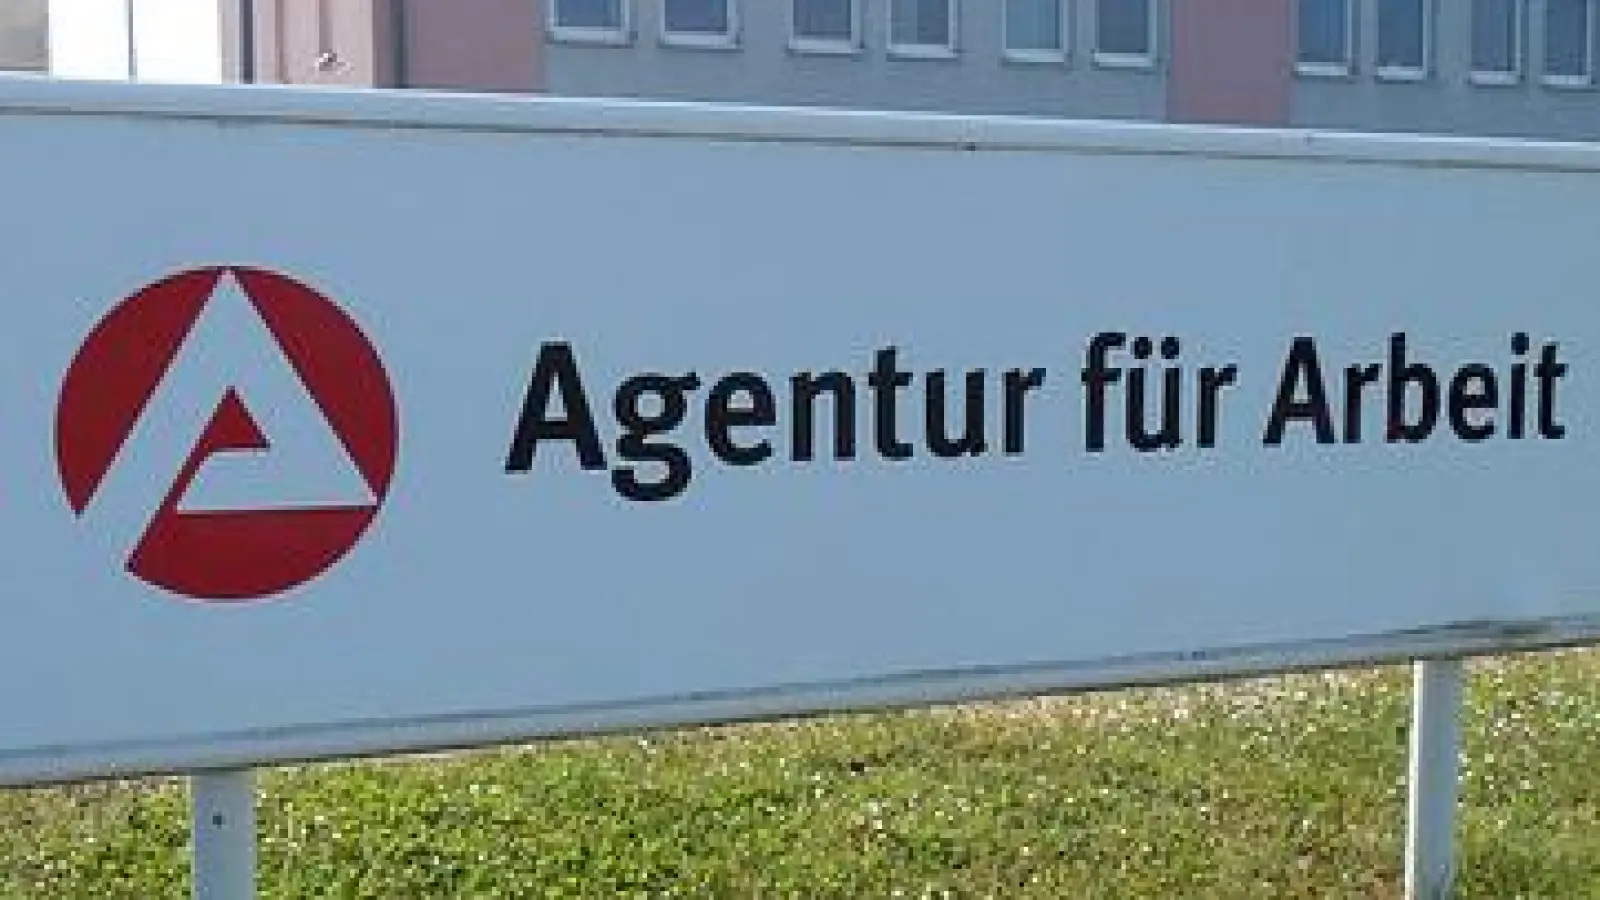 Die Agentur für Arbeit findet man jetzt in Erding-Aufhausen. (Foto: succo, CC0)